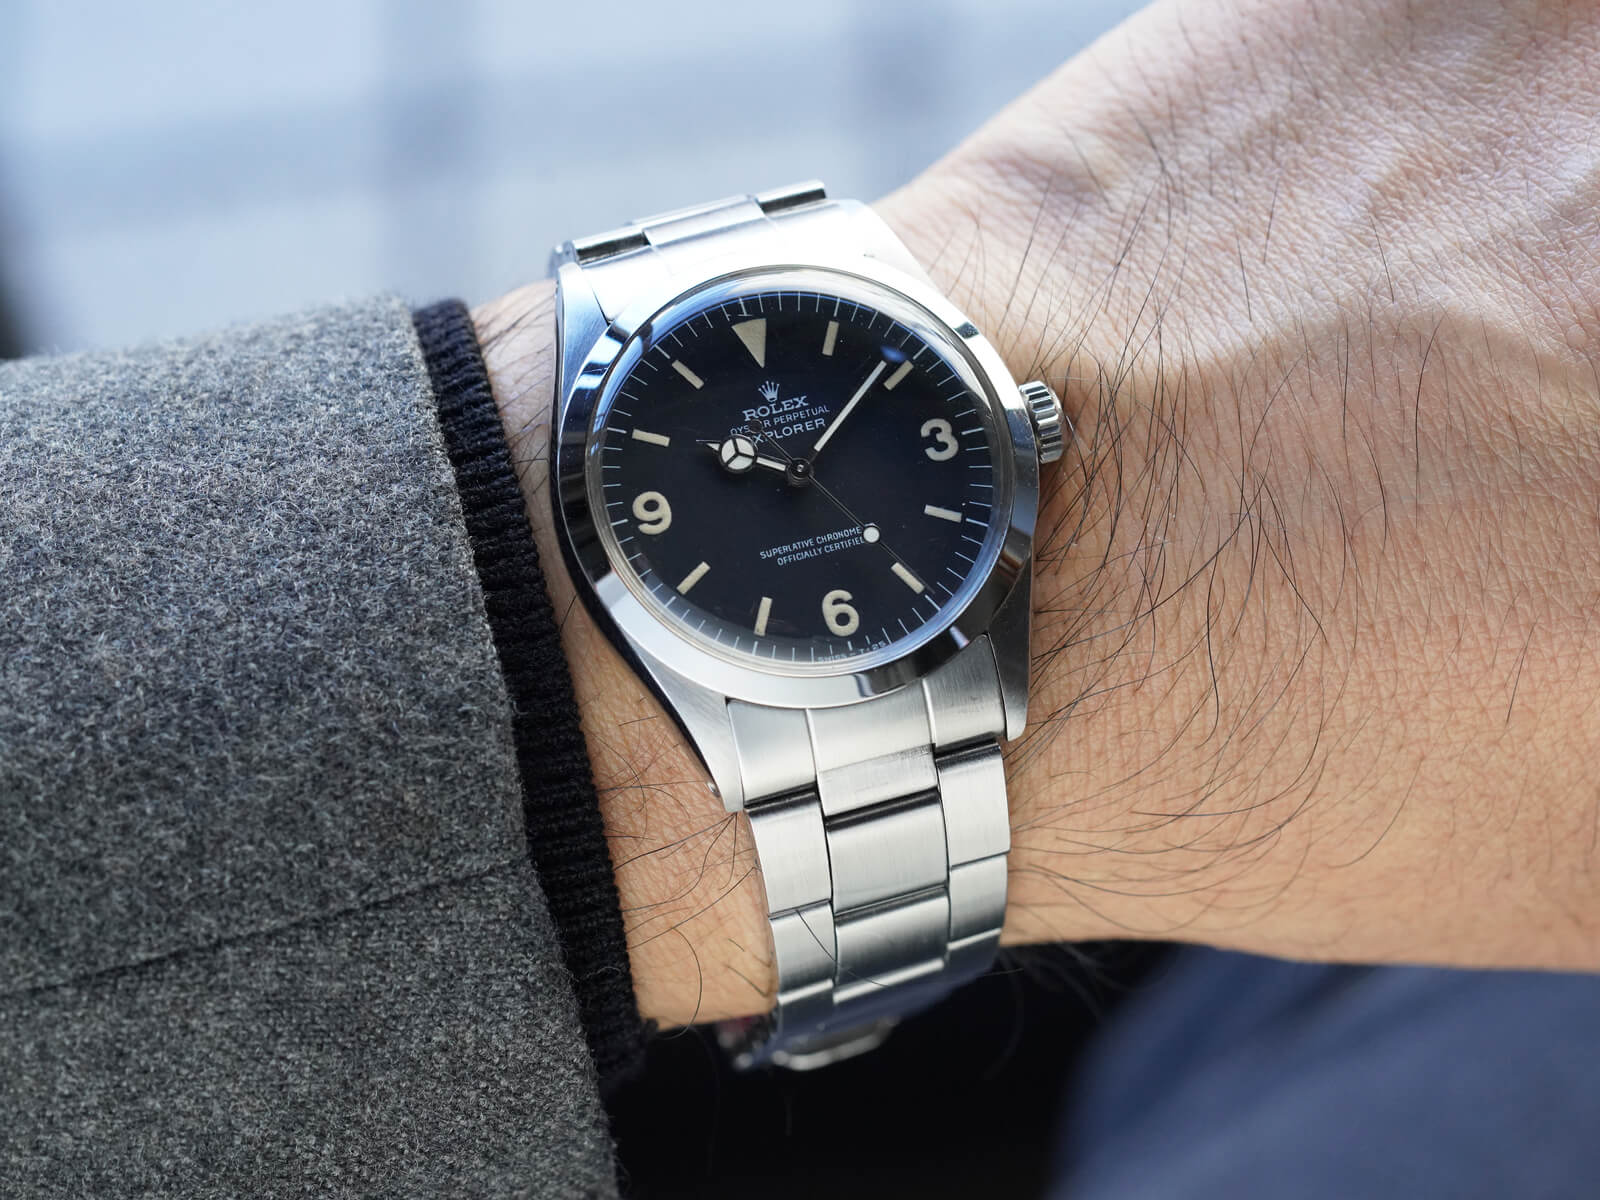 ロレックス エクスプローラー1 ランダムシリアル ルーレット 124270 ROLEX 腕時計 ウォッチ 黒文字盤 2021年新作